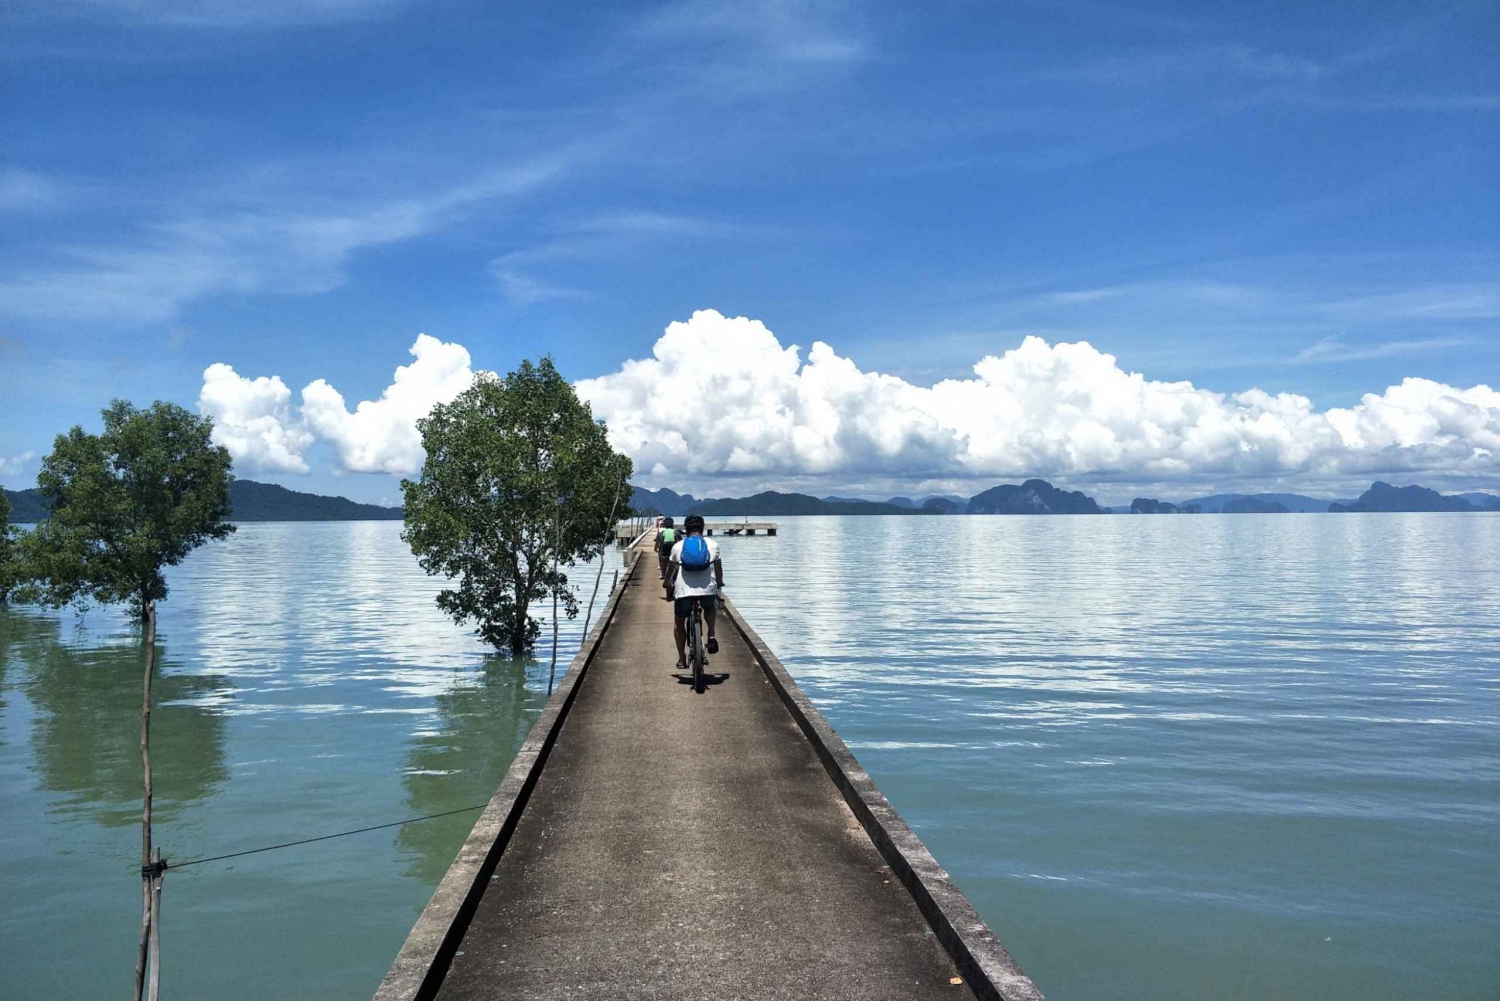 Phuket: Dagsutflykt med cykling och strand på ön Yao